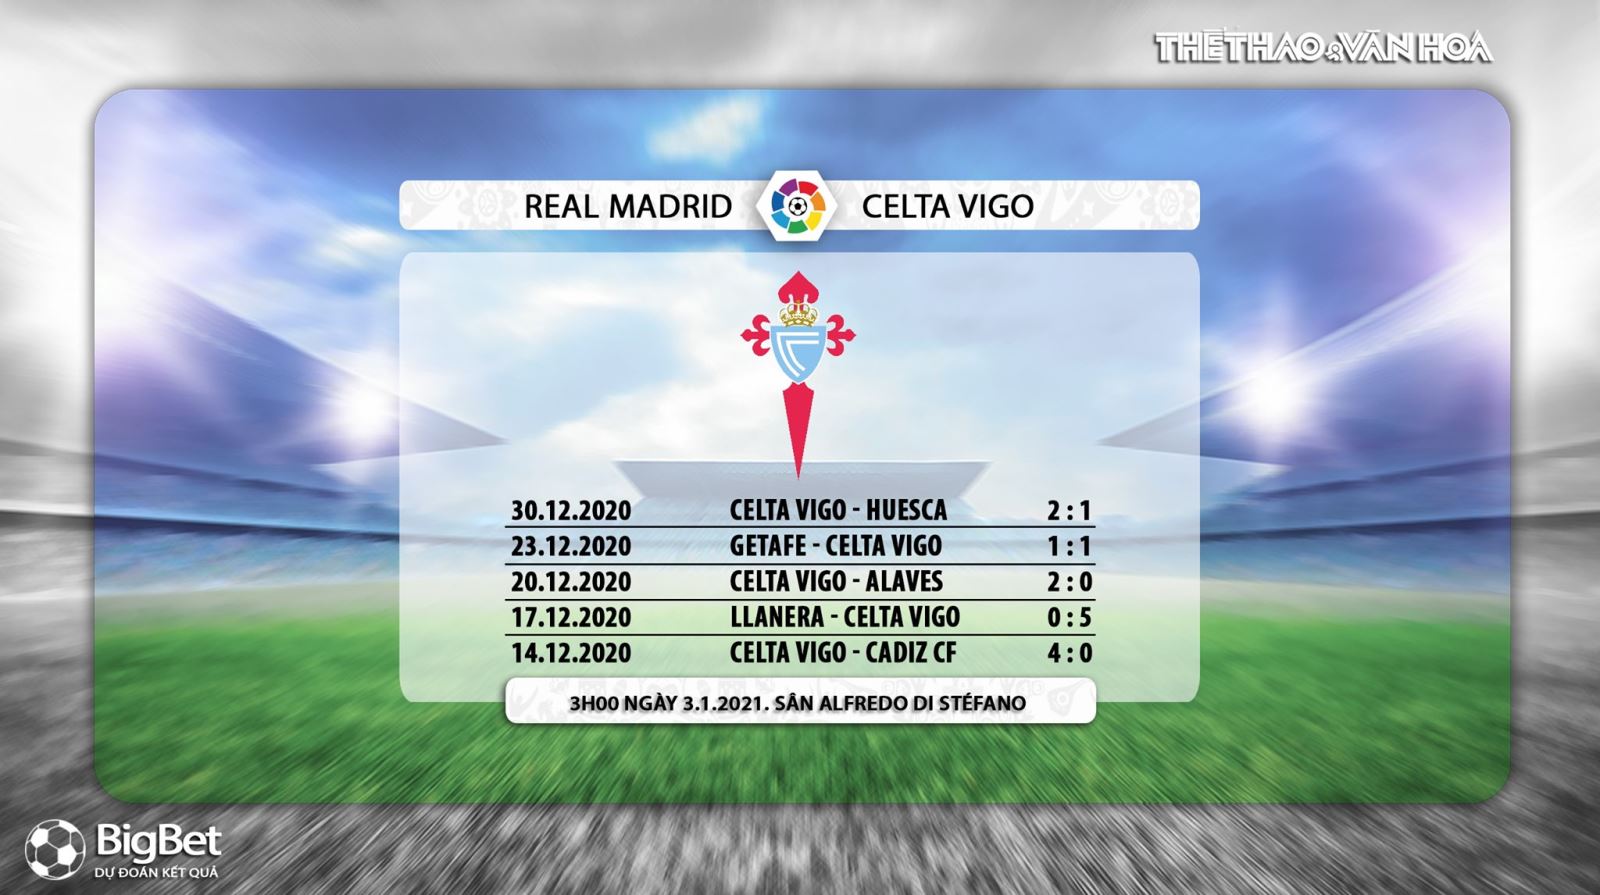 Keo nha cai, Nhận định kết quả, Real Madrid vs Celta Vigo, Trực tiếp bóng đá TBN hôm nay, BĐTV, nhận định bóng đá bóng đá Celta Vigo đấu với Real Madrid, trực tiếp bóng đá La Liga